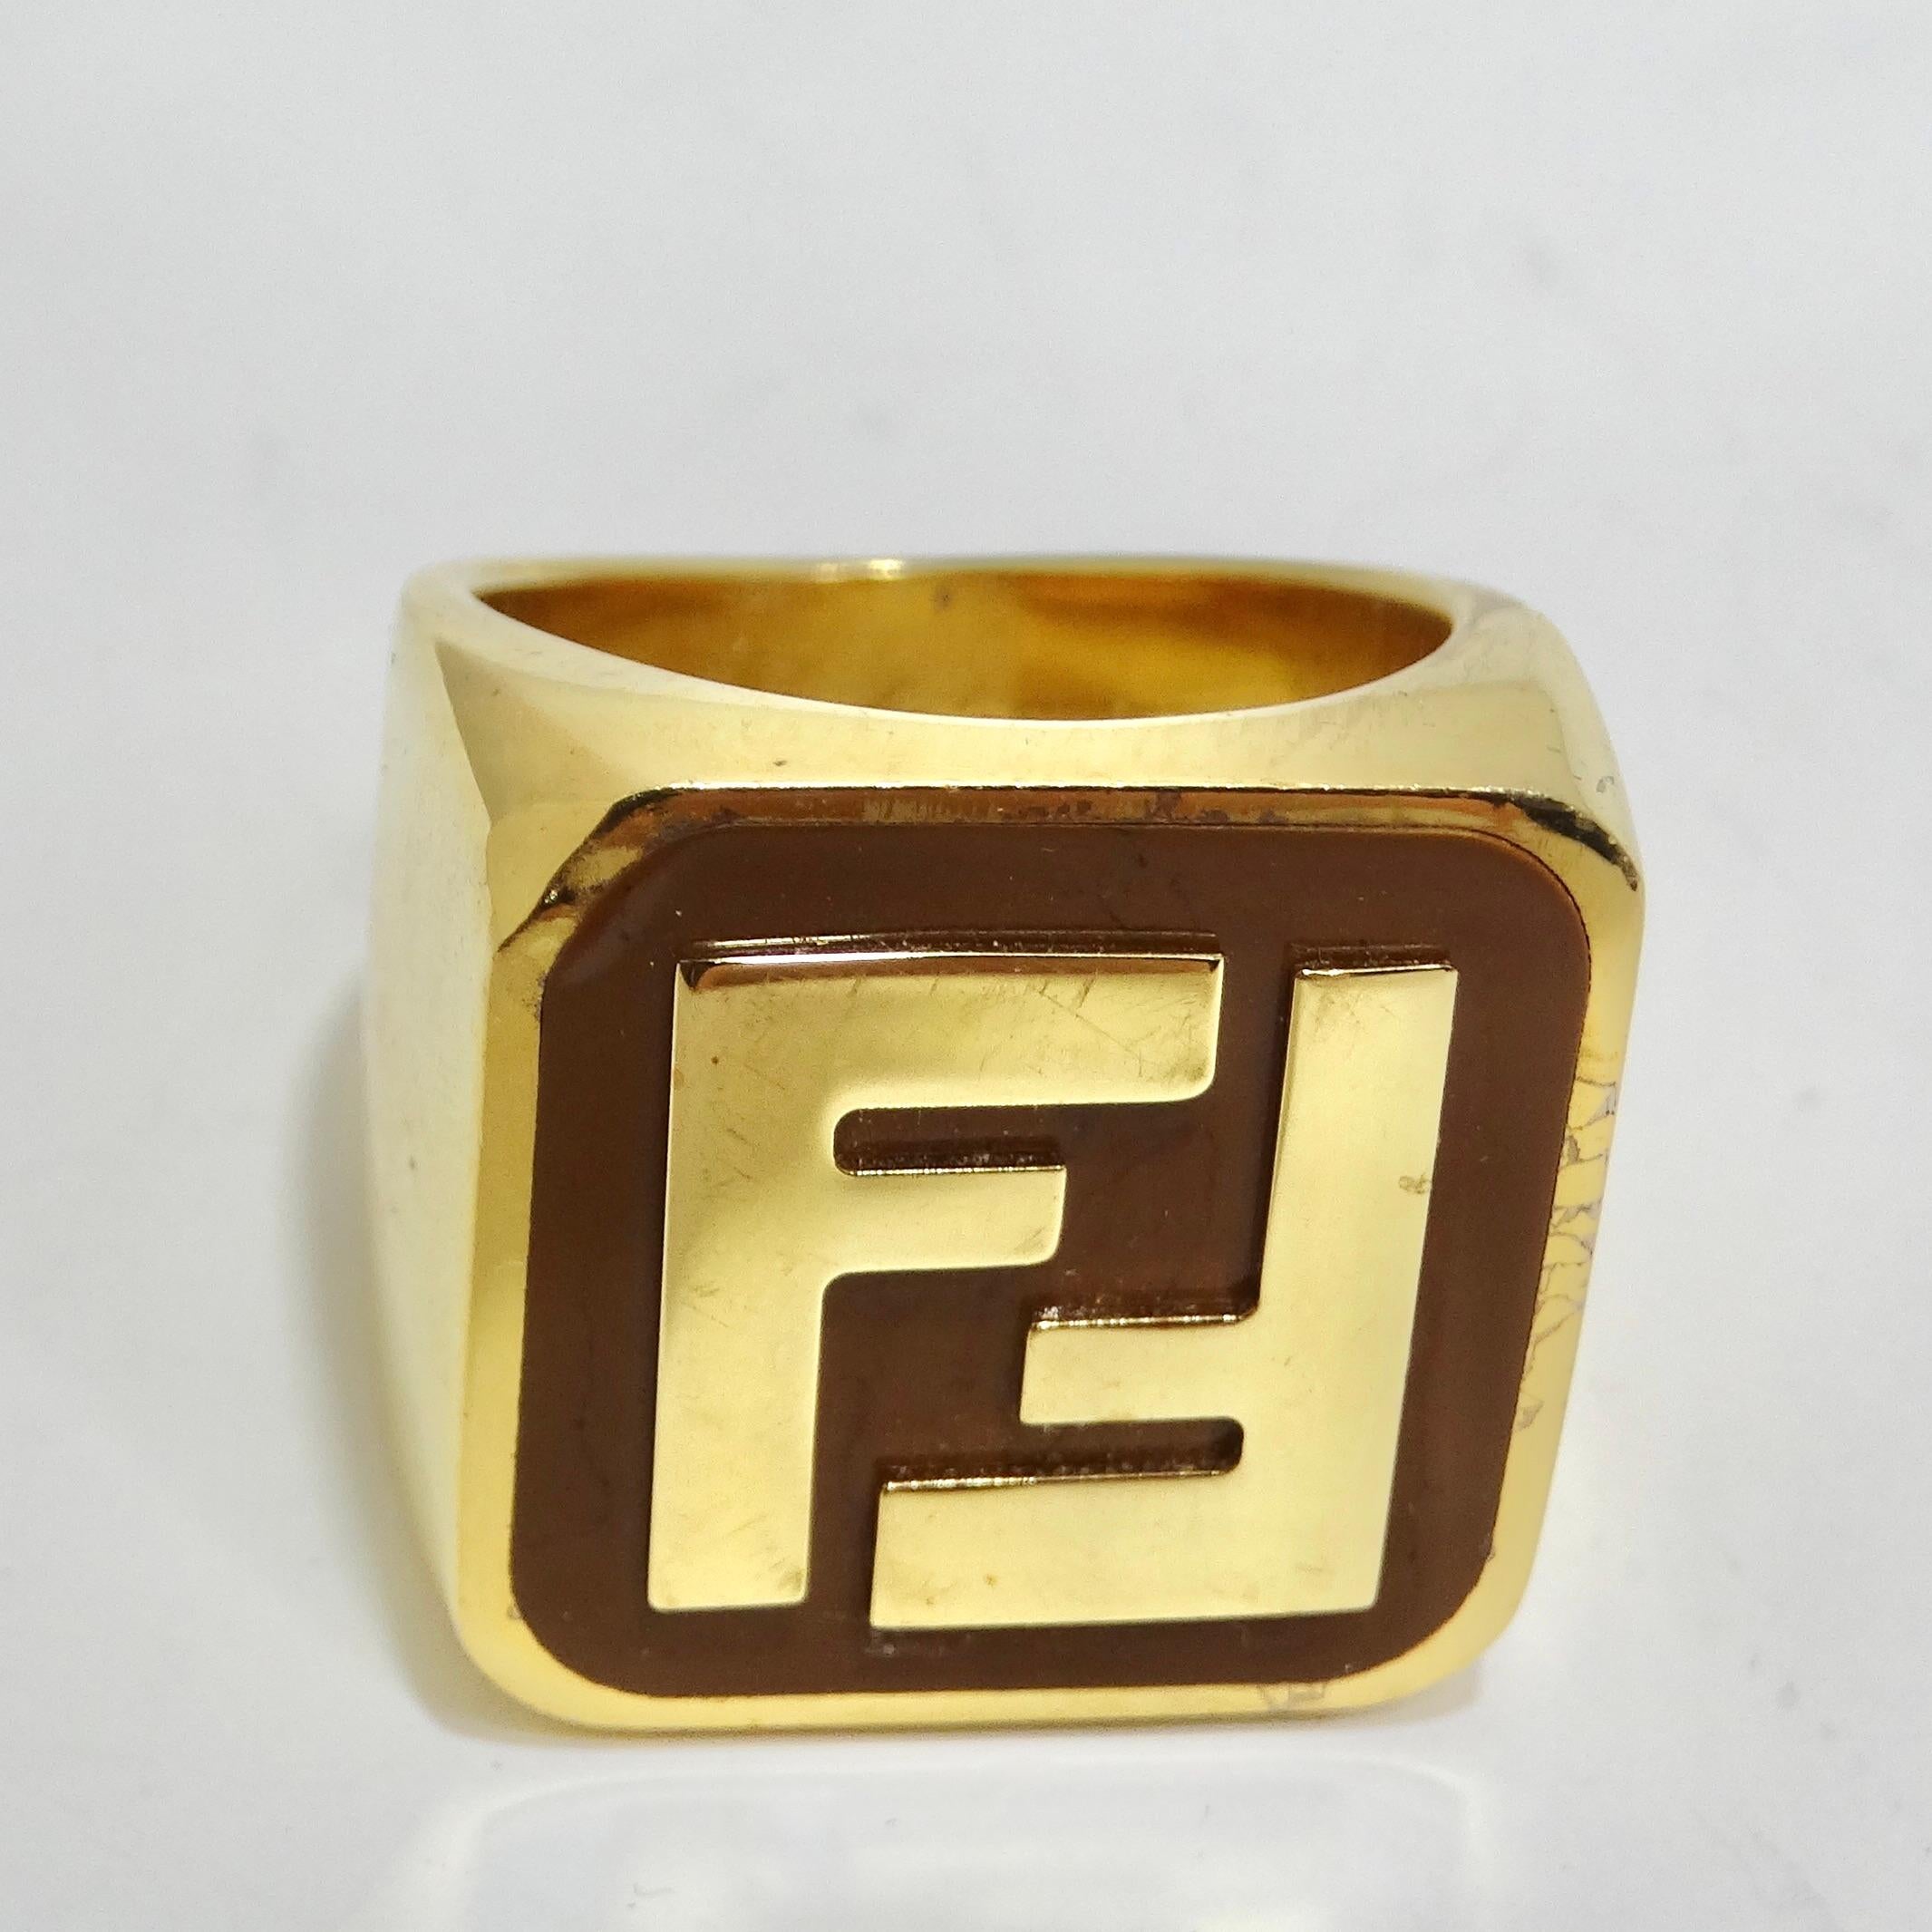 Rehaussez votre style avec la bague en or du logo Fendi FF - un accessoire unisexe intemporel et polyvalent ! Cette bague vintage Fendi arbore en son centre l'incontournable logo FF. Il s'agit d'une pièce d'apparat qui reflète l'héritage de la